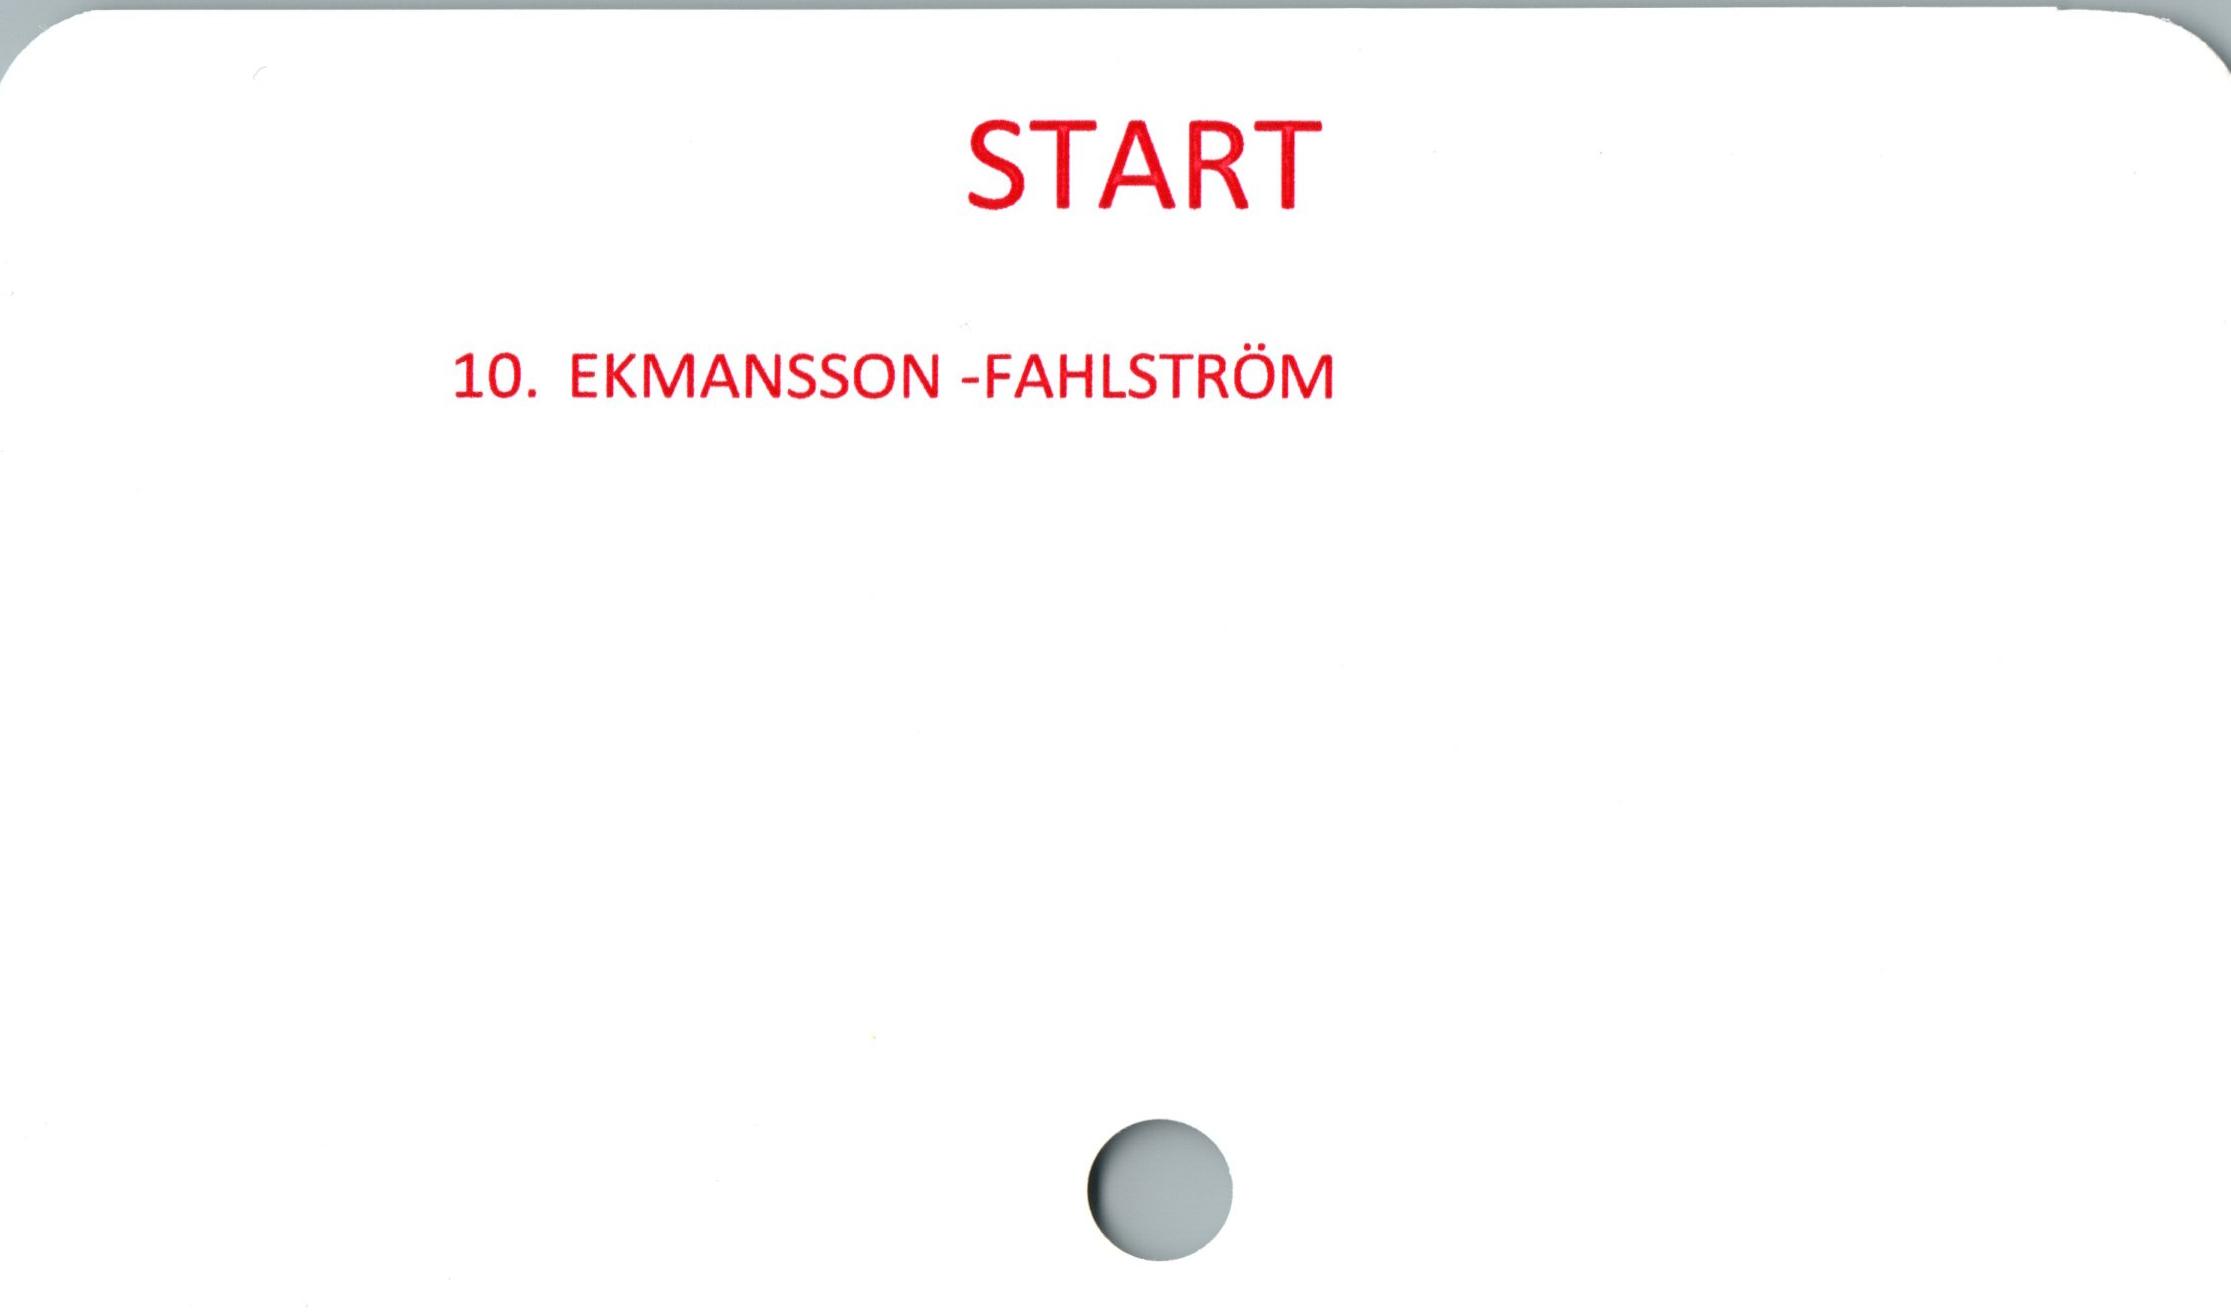  ﻿START

10. EKMANSSON -FAHLSTRÖM